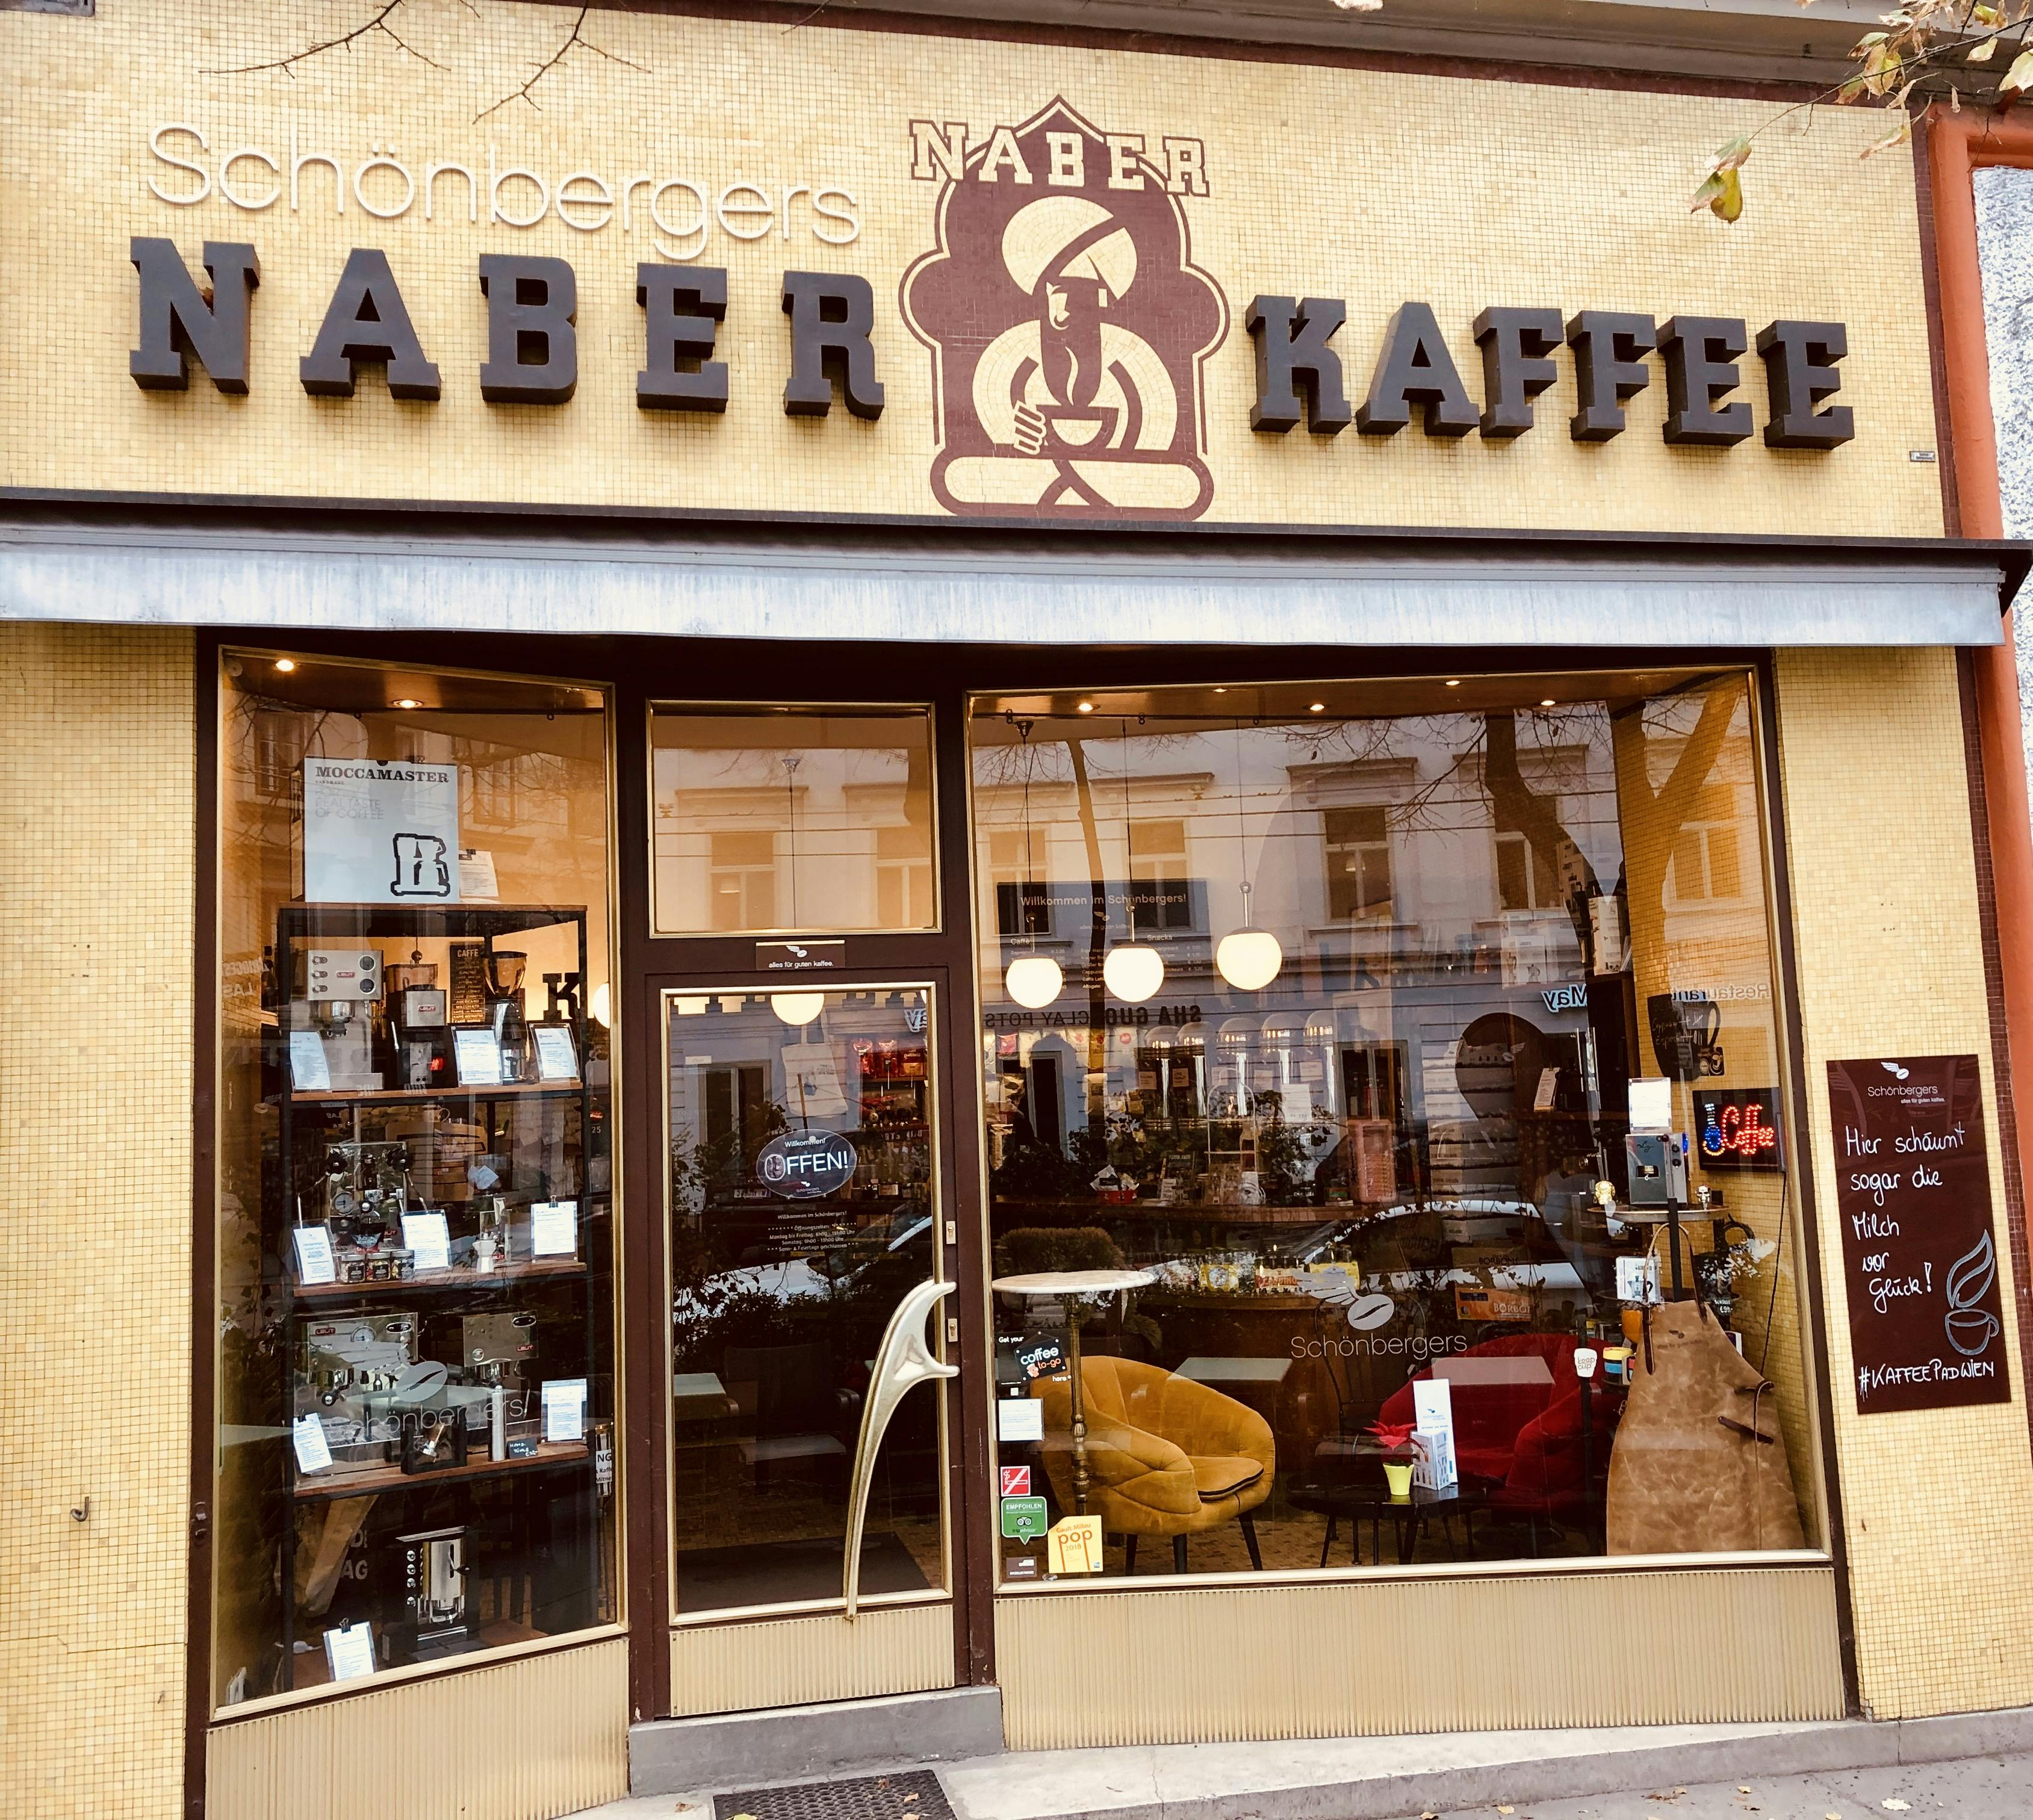 Kaffee zubereiten wie ein Barista | 5 Stunden Kurs in der denkmalgeschützten Caffè Bar in Wien